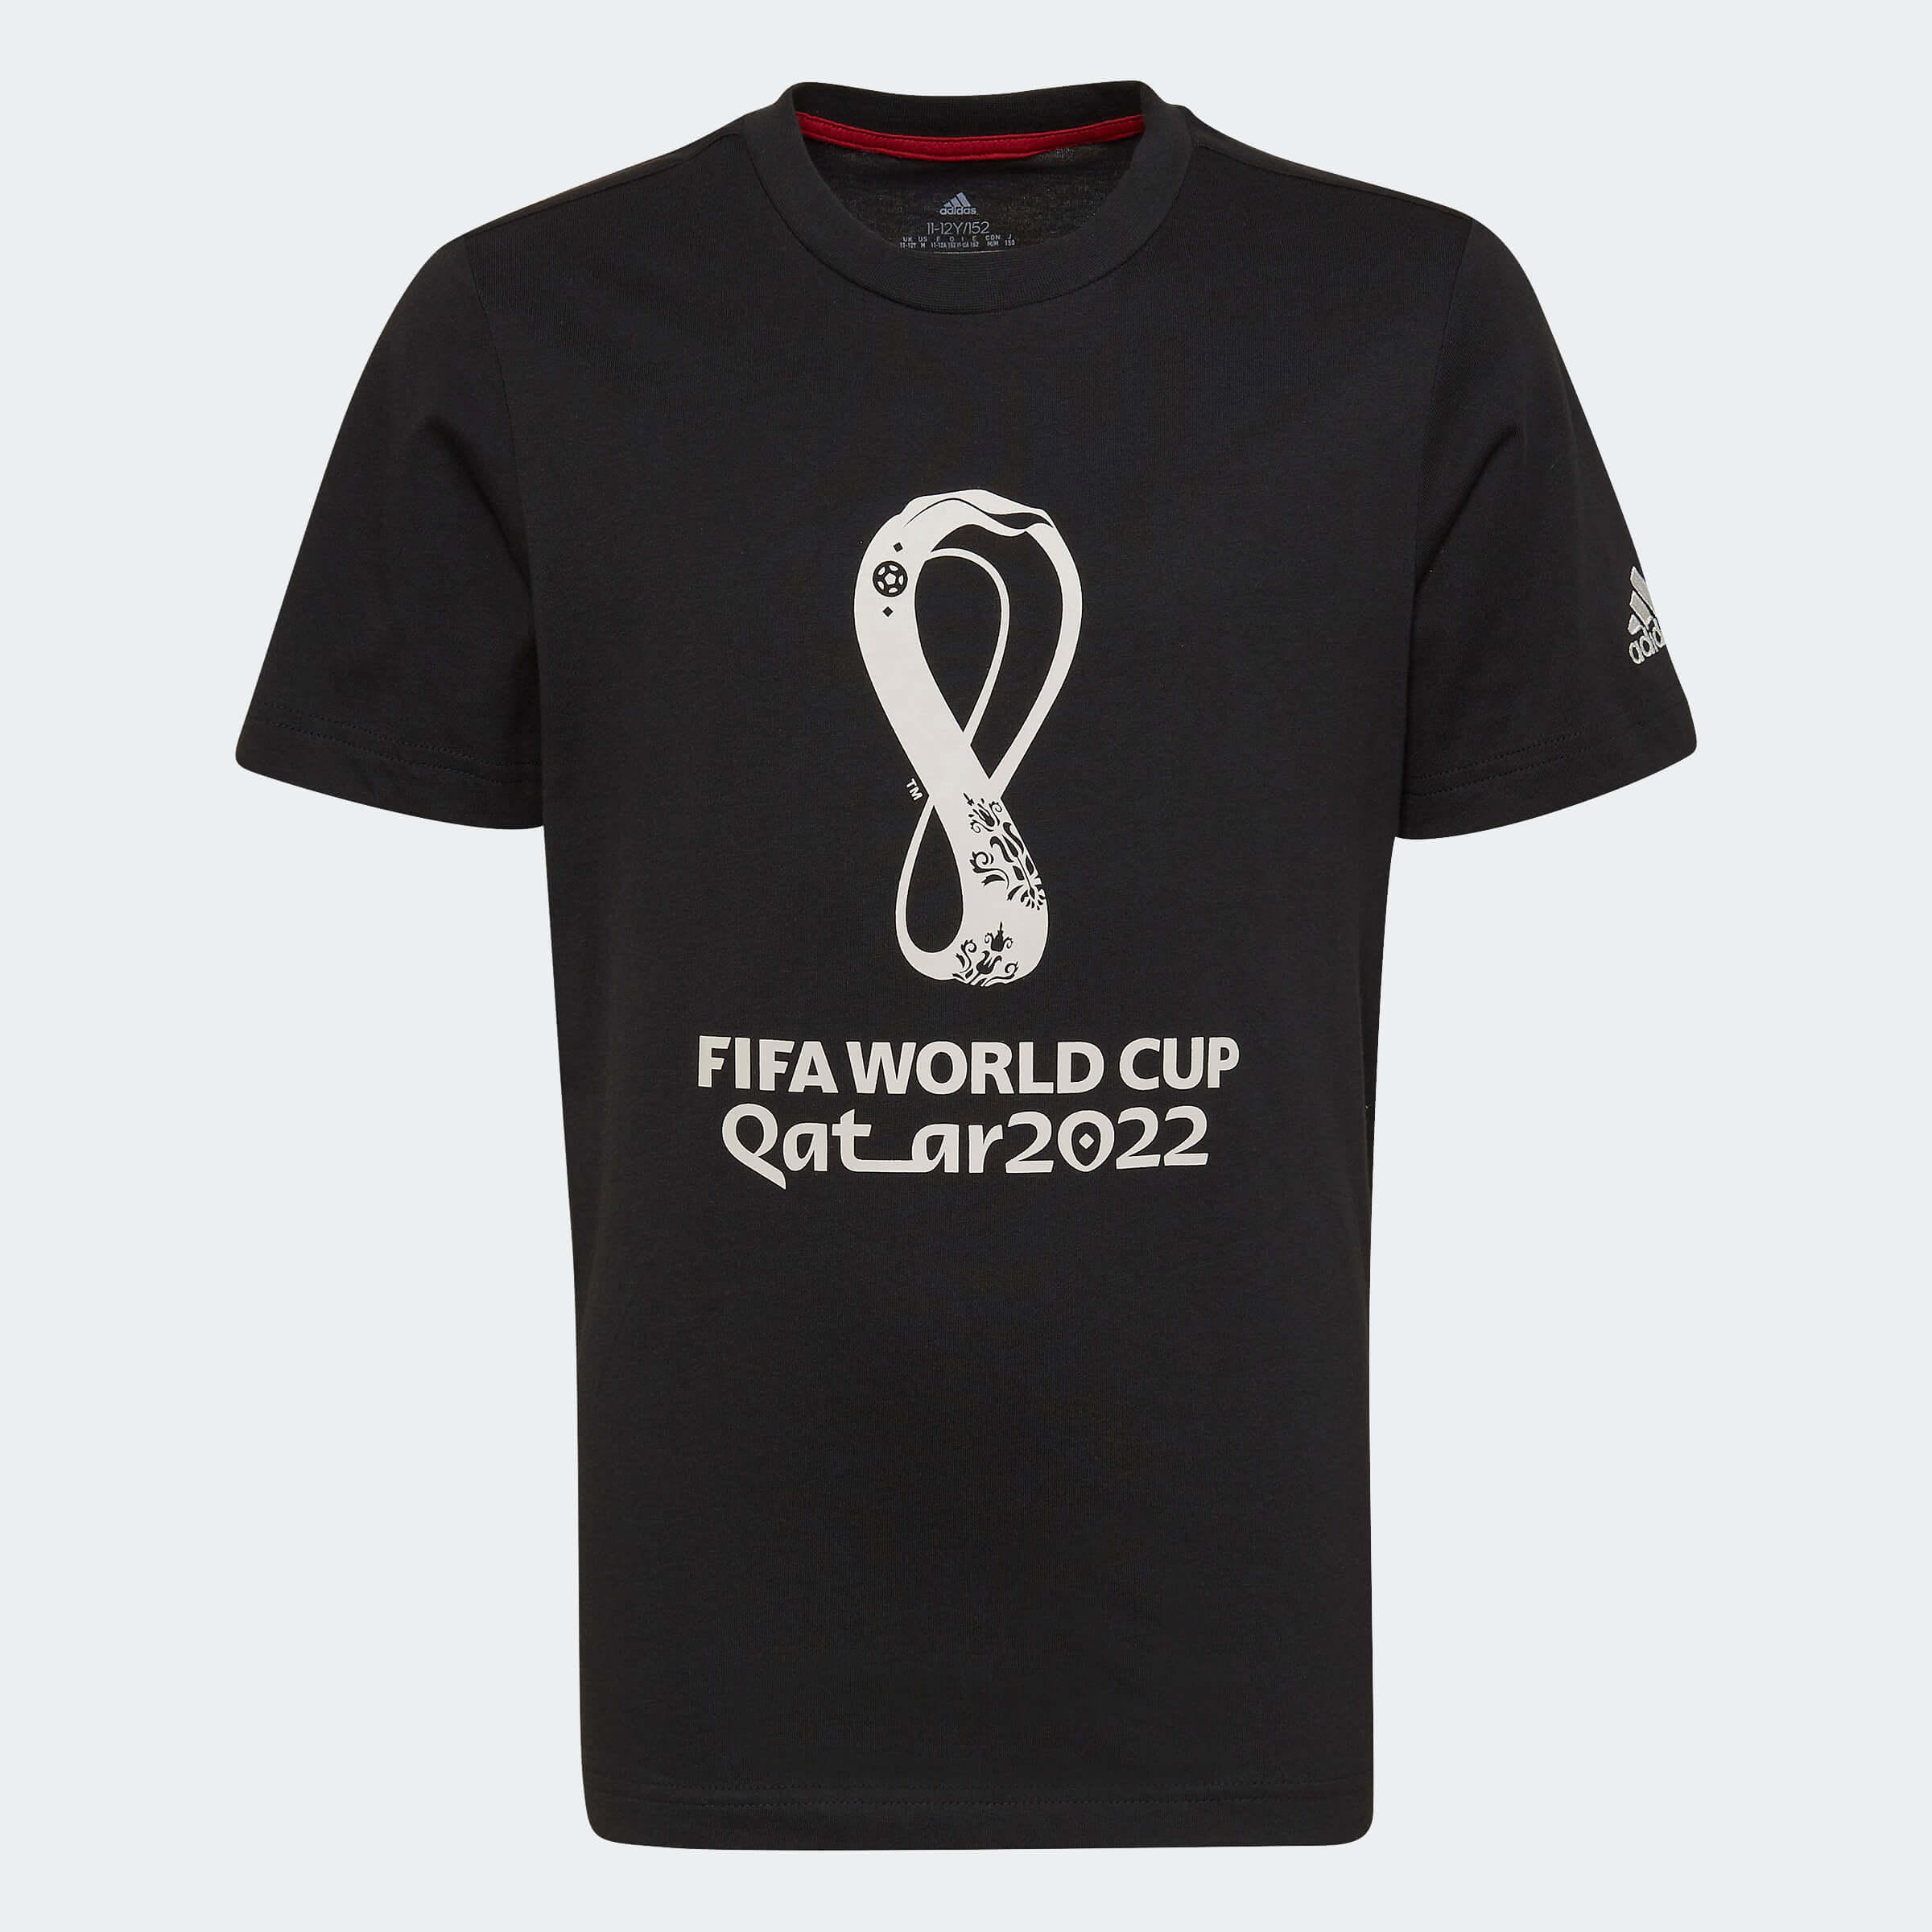 Adidas, Maglietta adidas per i giovani della Coppa del Mondo FIFA 2022